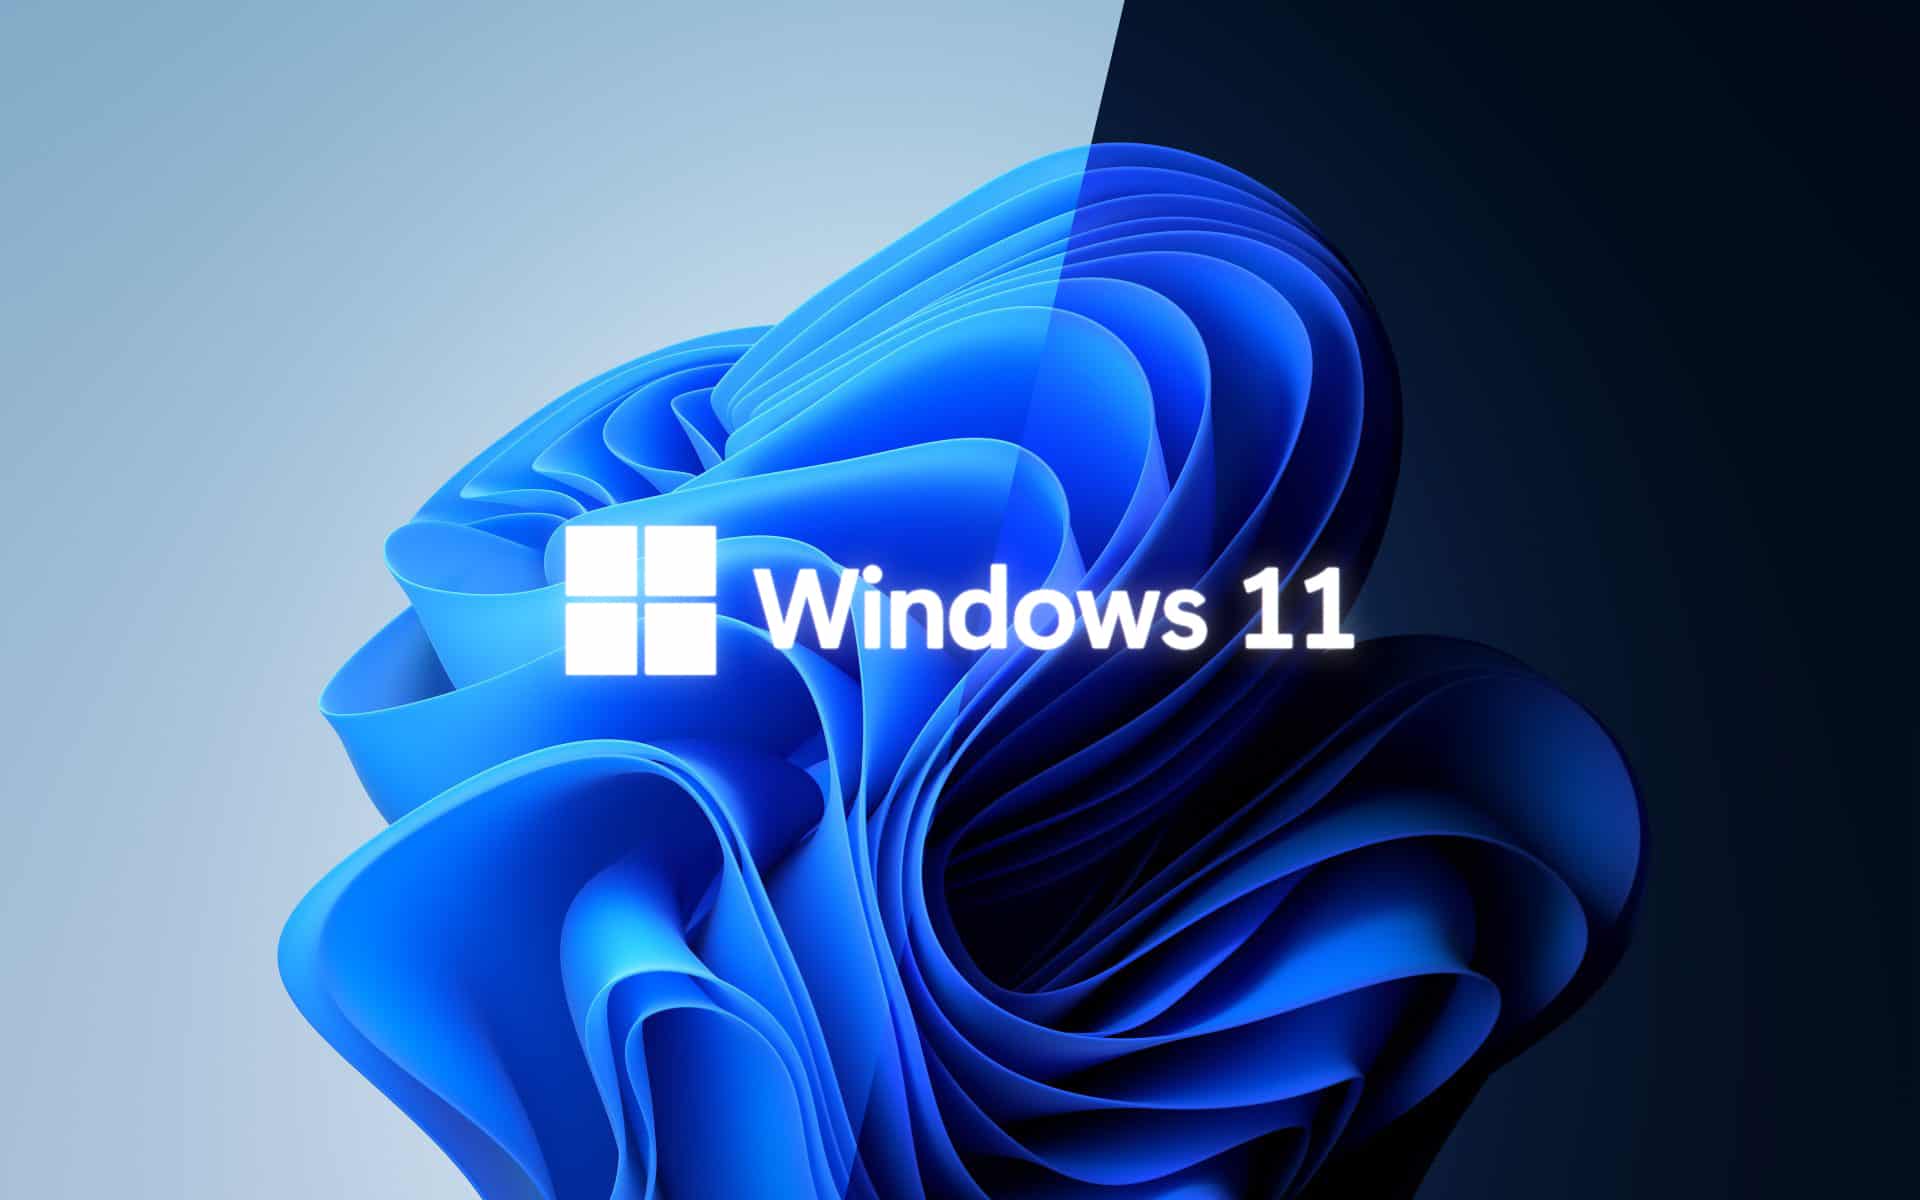 نظام Windows 11 بات متوفراً اليوم لكن يتوجب معرفة امور هامة قبل الترقية watanserb.com